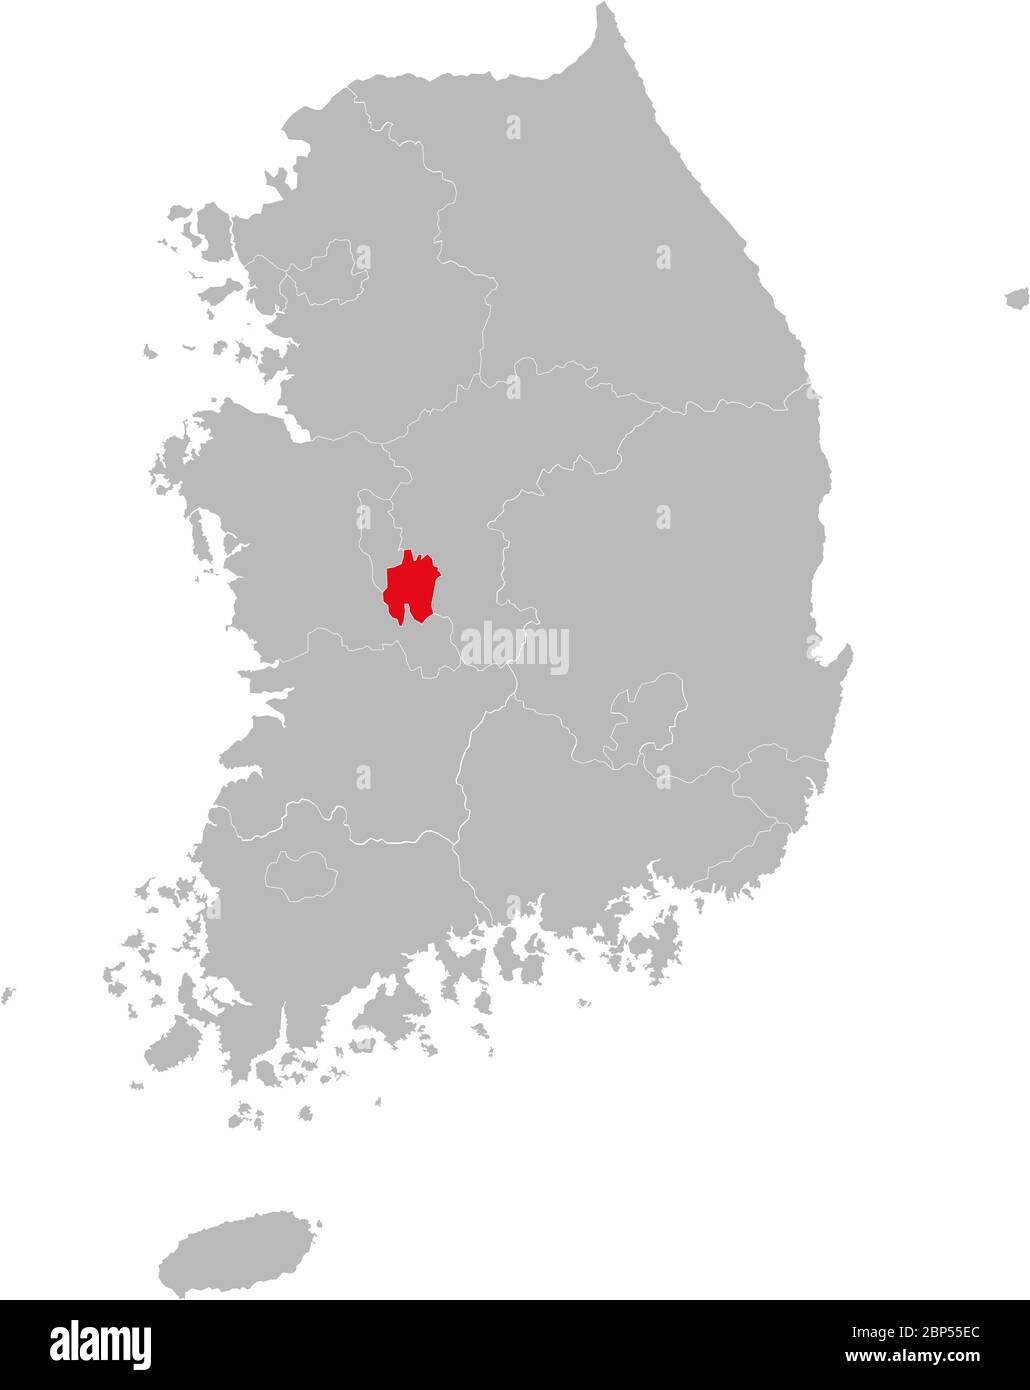 Provincia di Daejeon evidenziata sulla mappa della corea del Sud. Concetti e background aziendali. Illustrazione Vettoriale